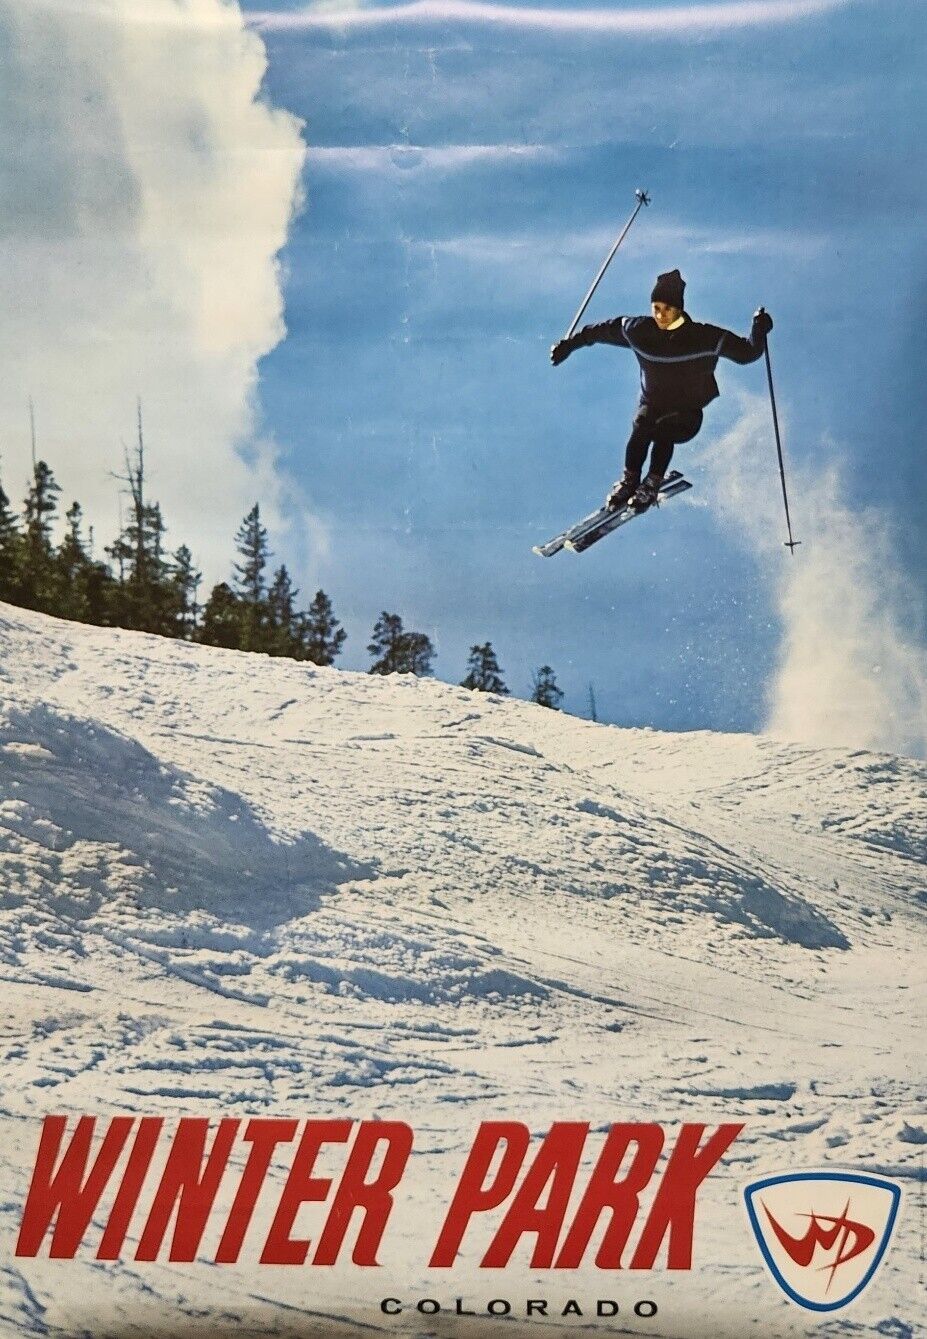 Original Authentic 1960s Winter Park Colorado Skiing Vintage Poster VG Condition